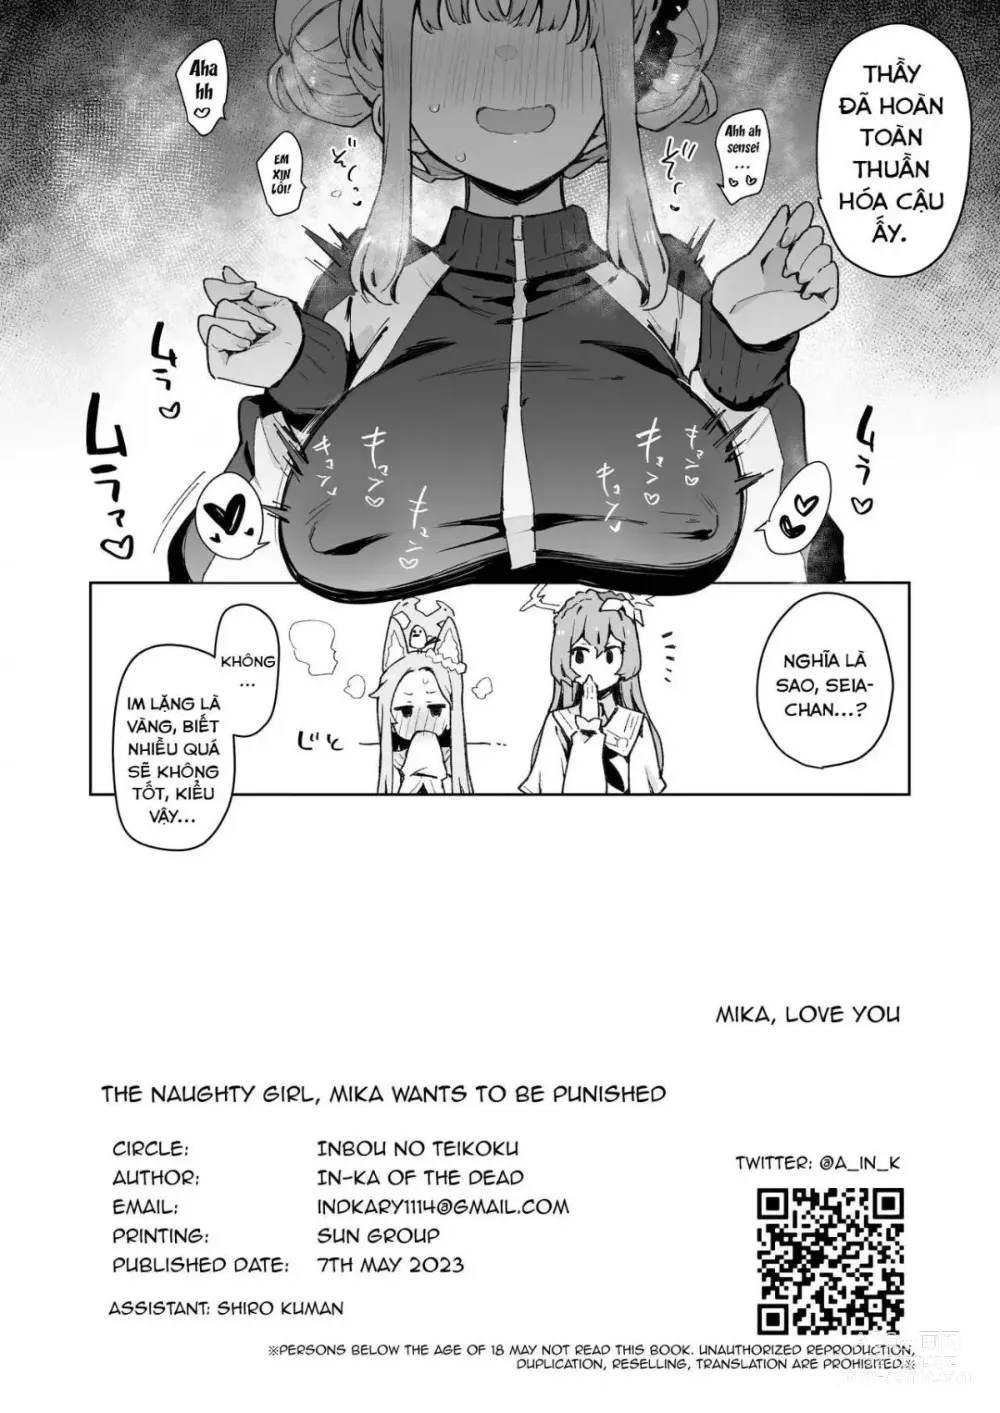 Page 25 of doujinshi Mika muốn bị đạo tàn bụ